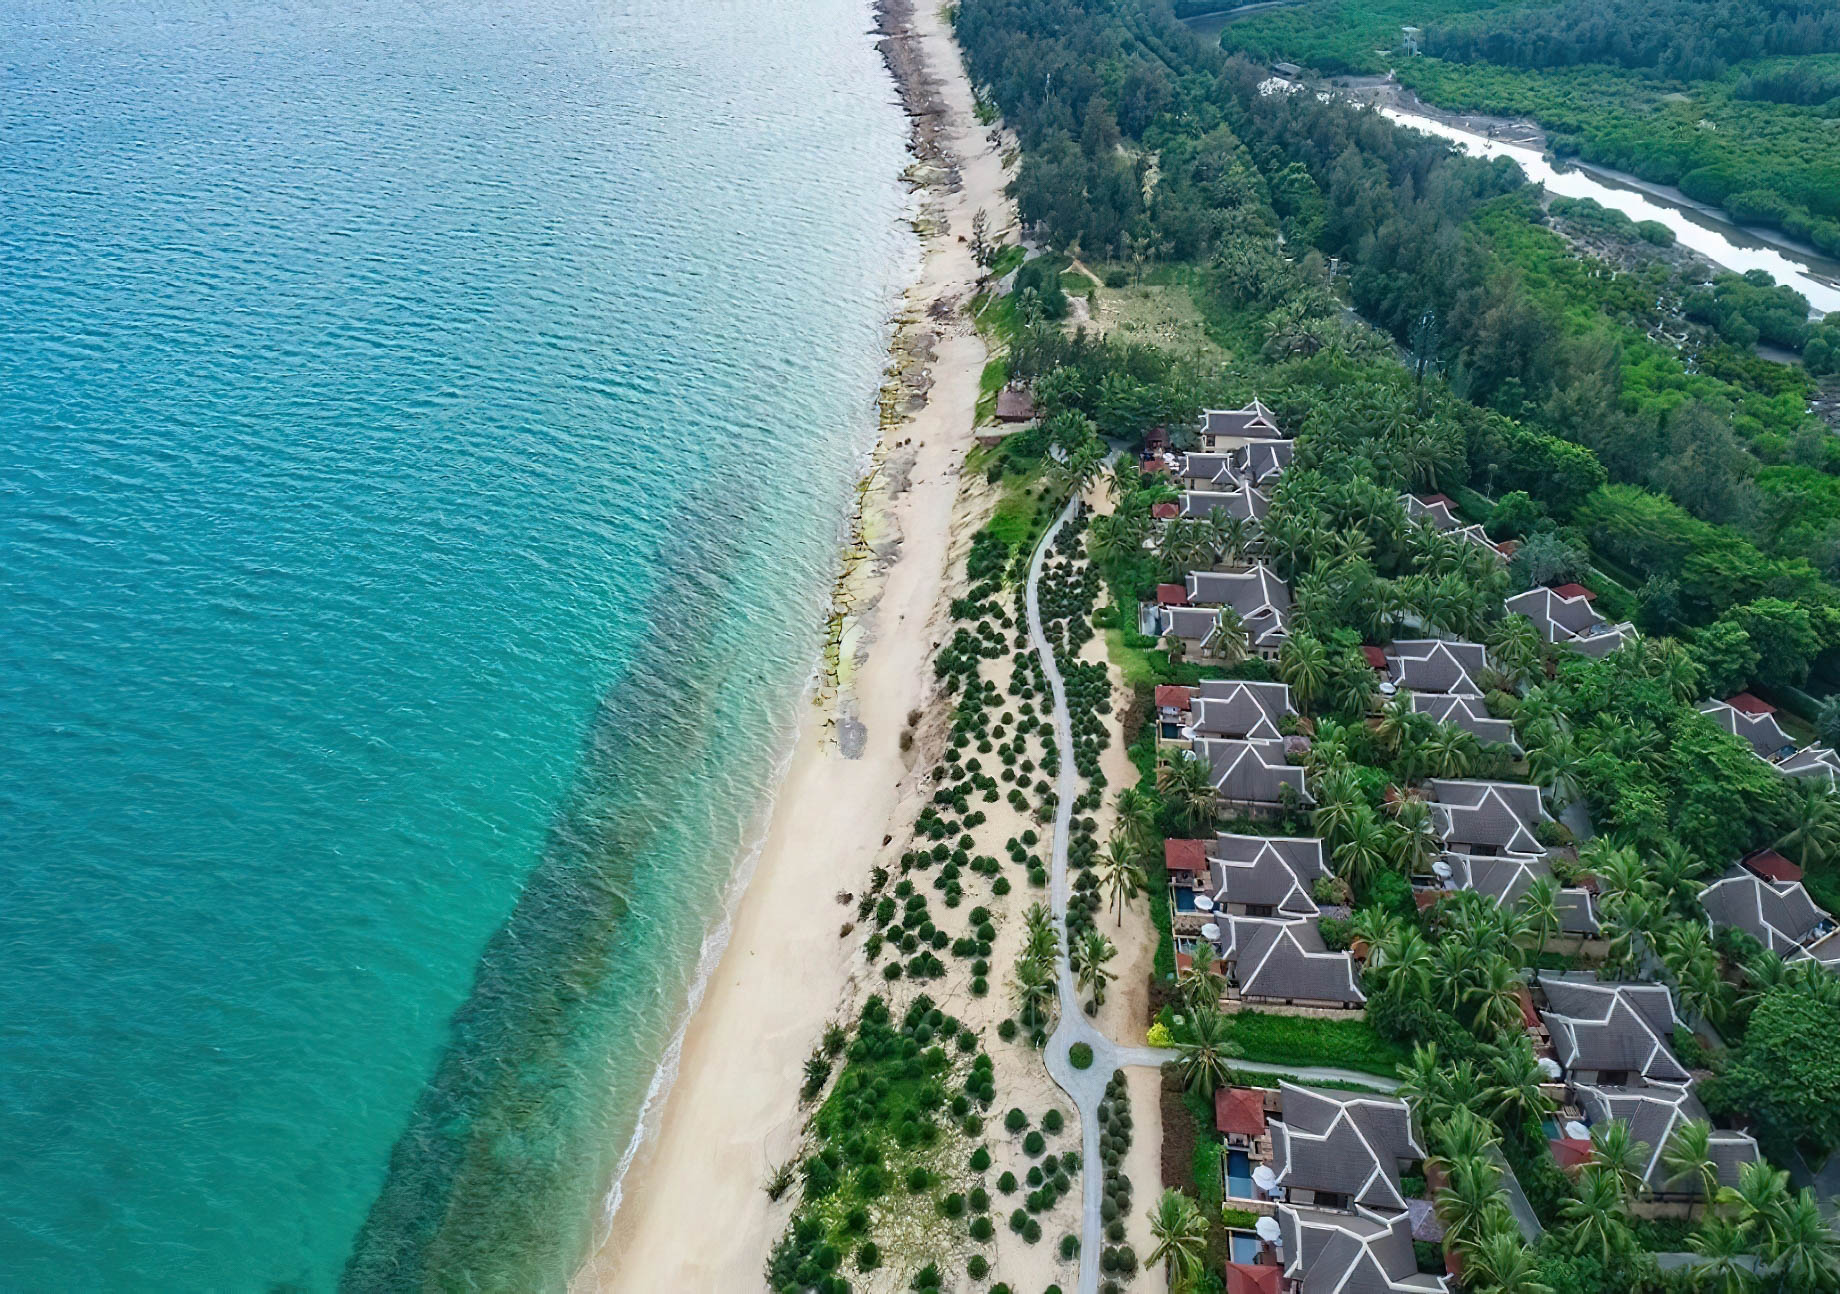 The Ritz-Carlton Sanya, Yalong Bay Hotel - Hainan, China - Hotel Villas Aerial View